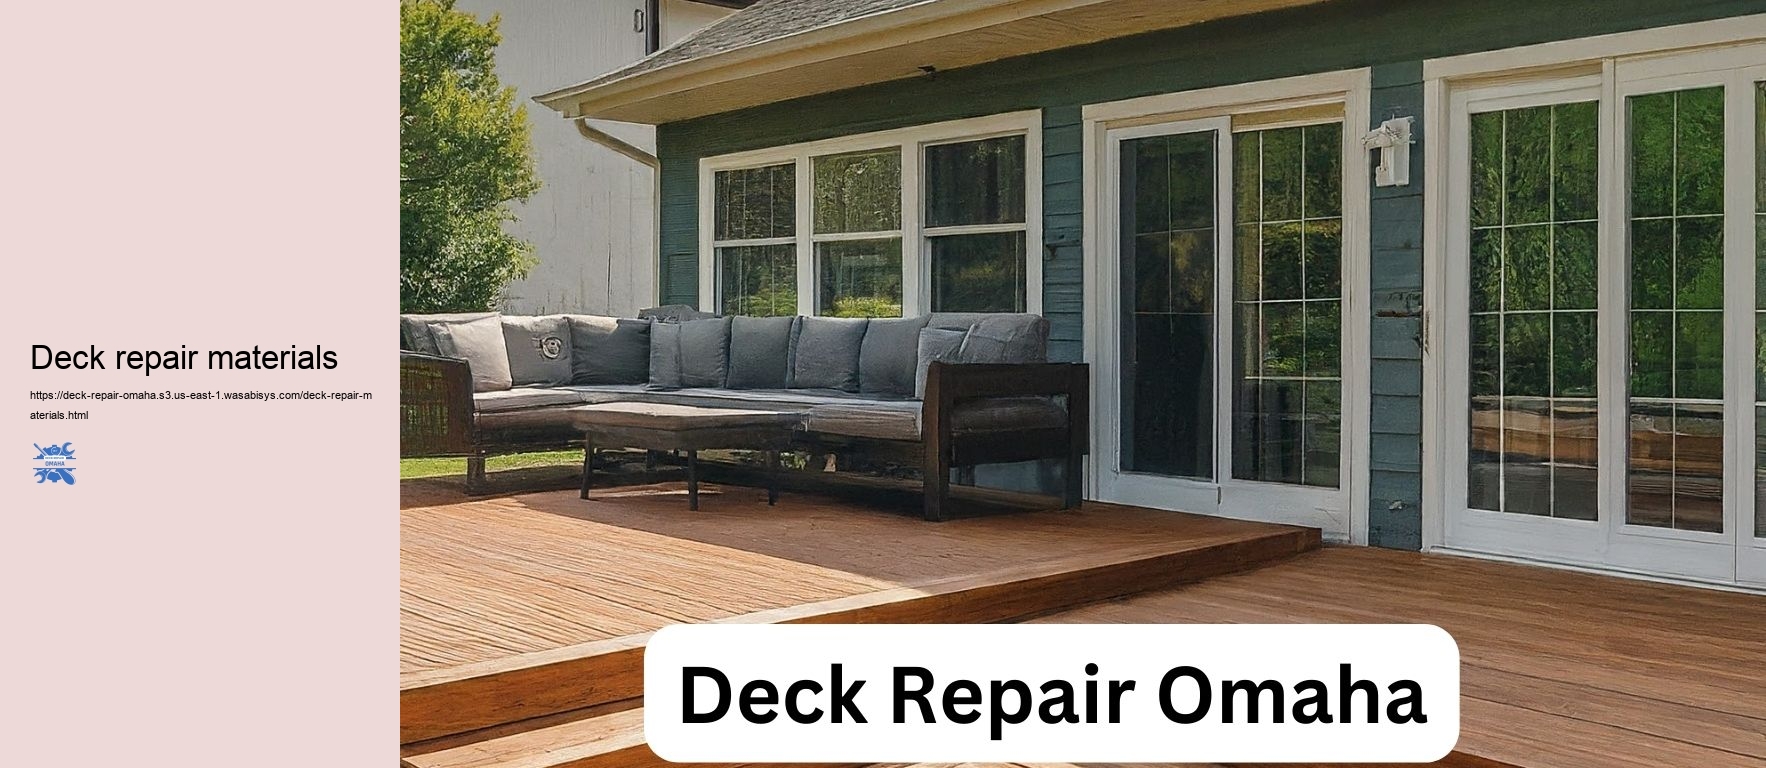 Deck repair materials